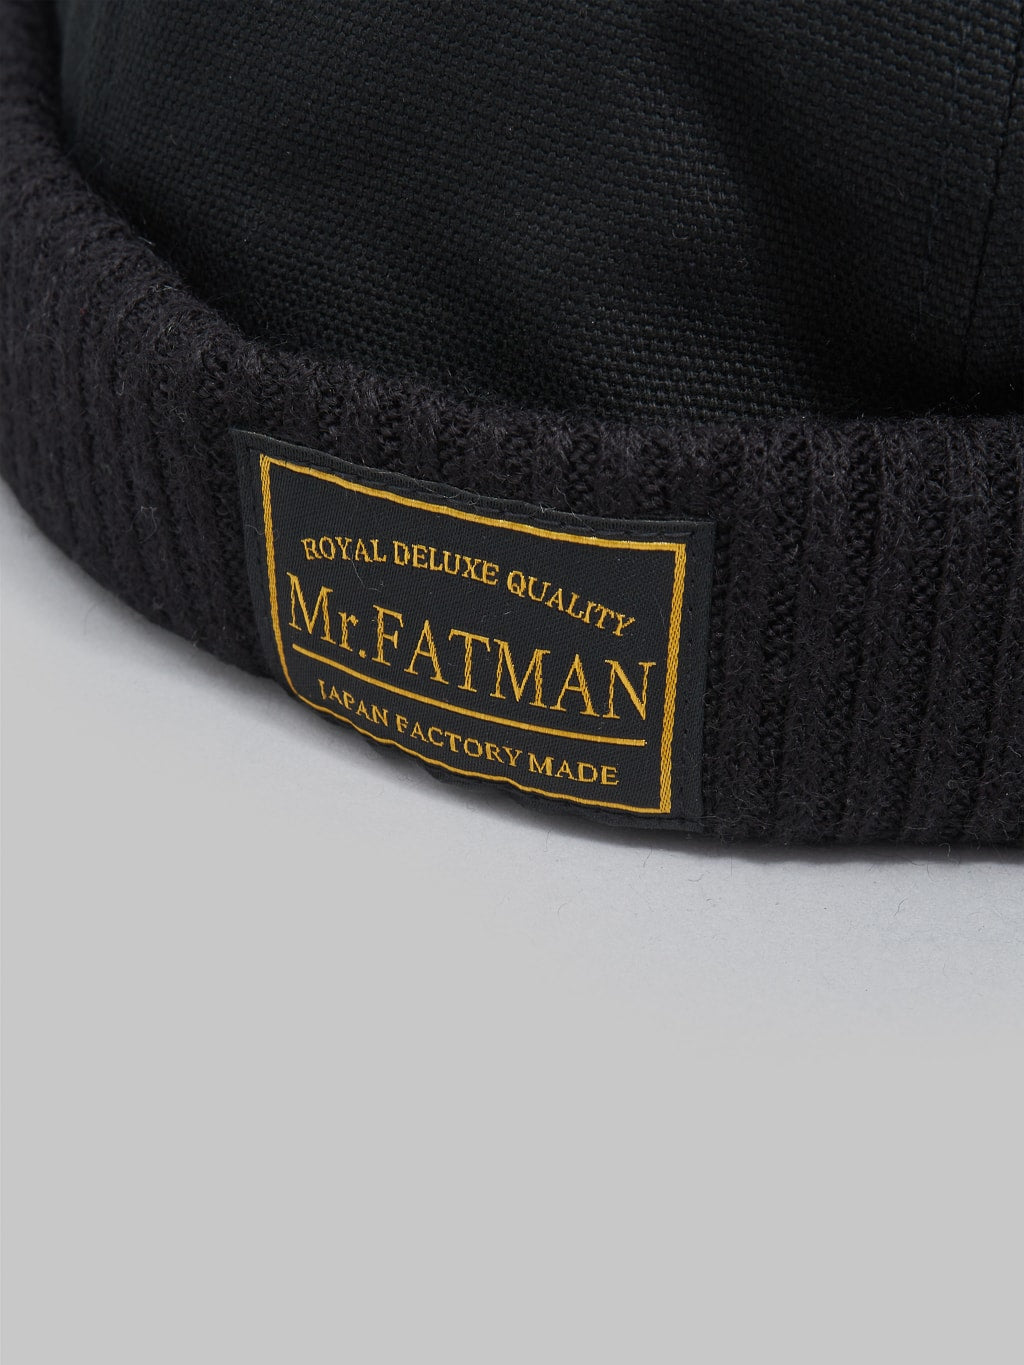 Mr Fatman OX Fisherman Cap black logo tag